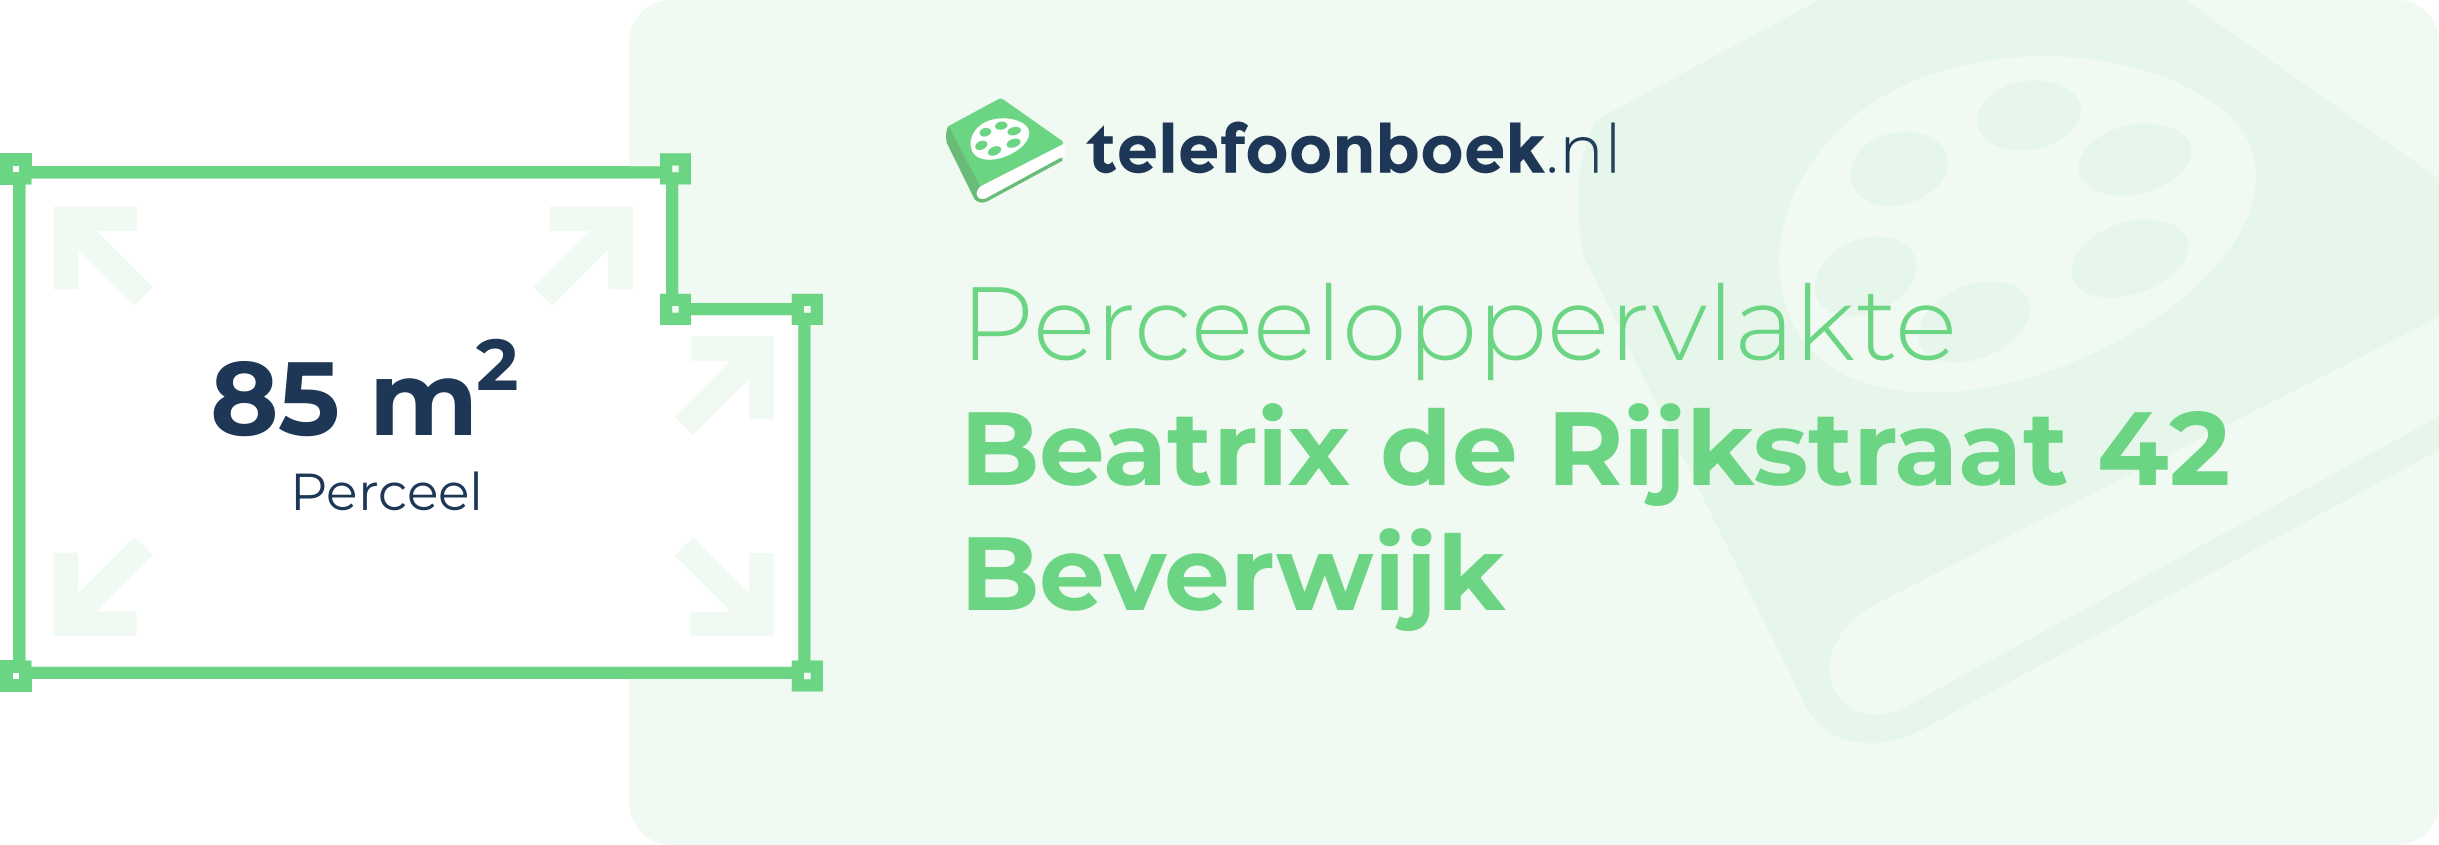 Perceeloppervlakte Beatrix De Rijkstraat 42 Beverwijk